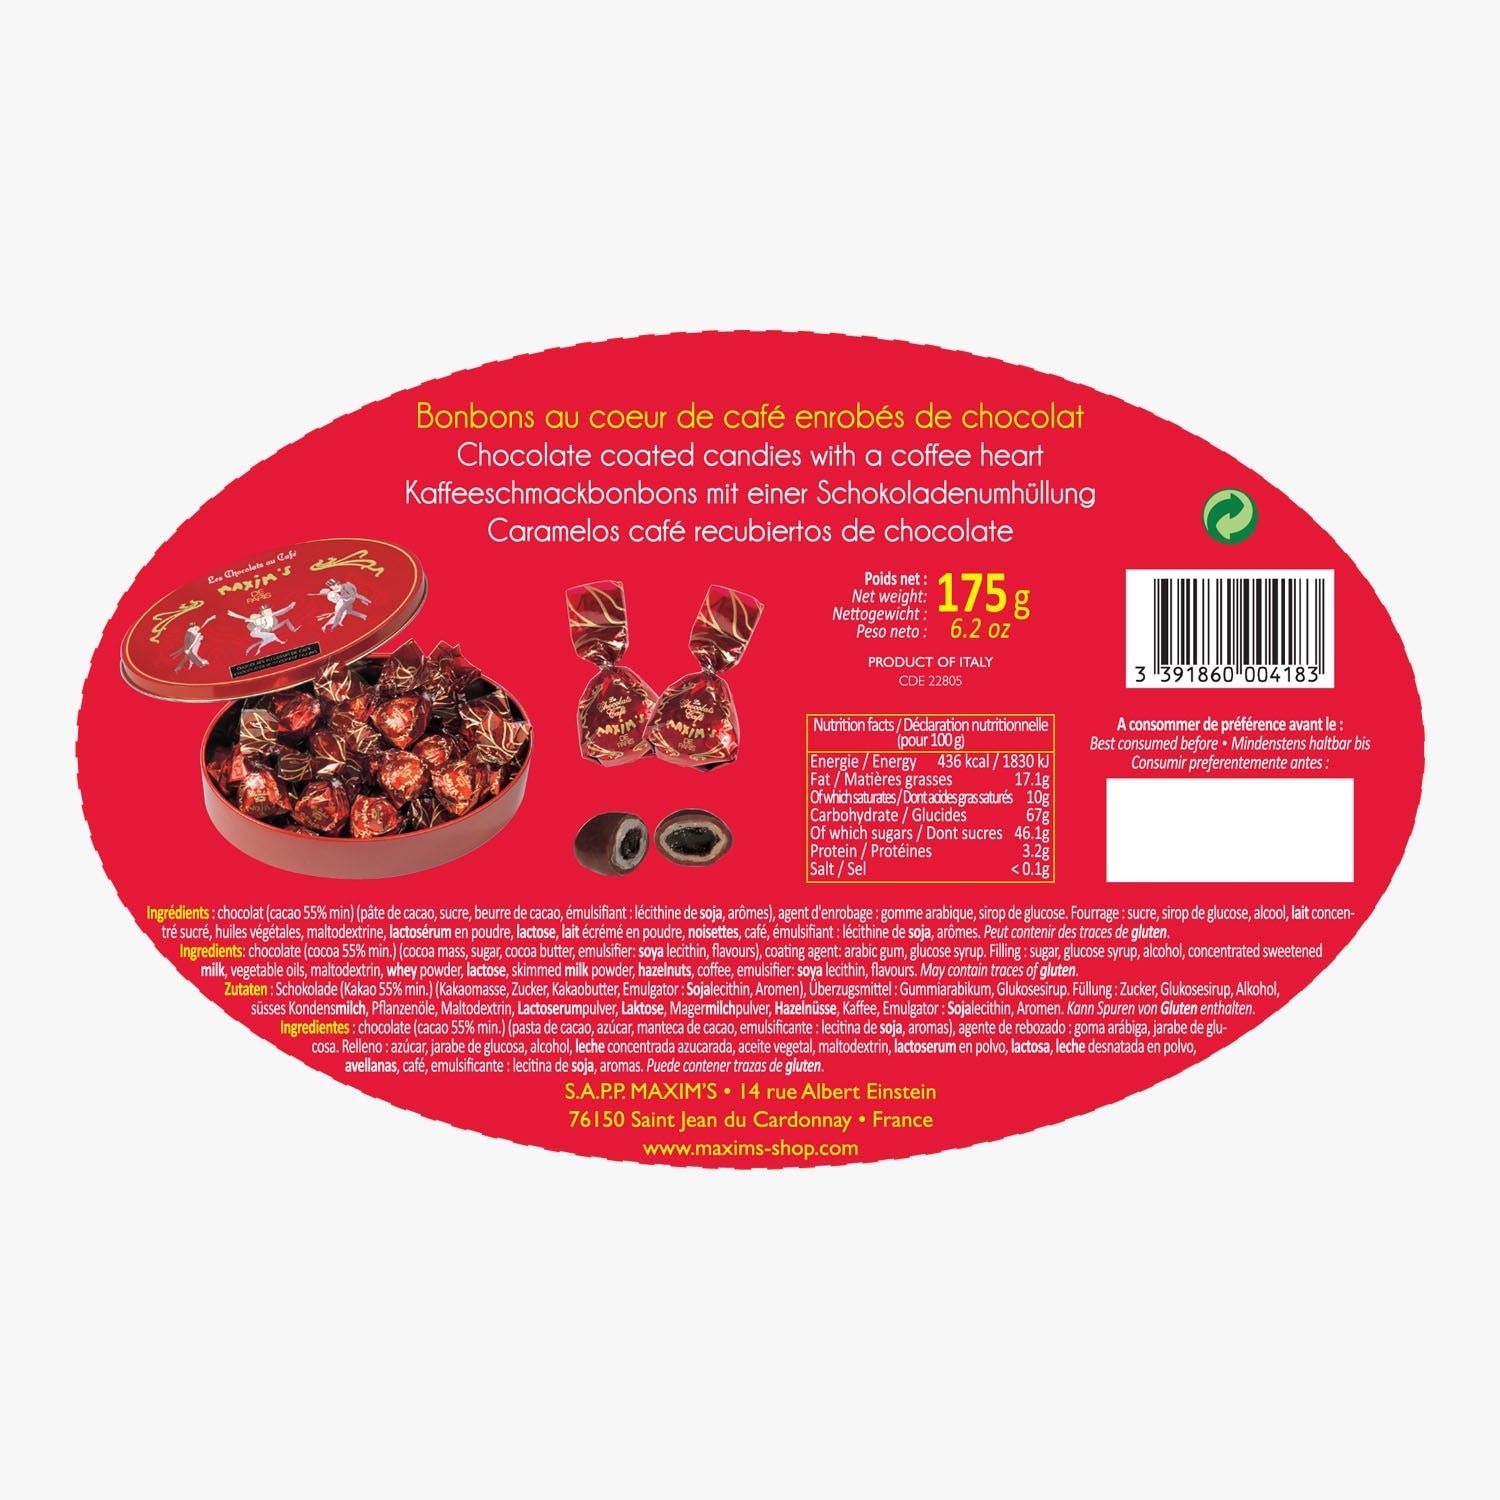 Vente de chocolats et de confiseries aux multiples saveurs – KIBO (3)